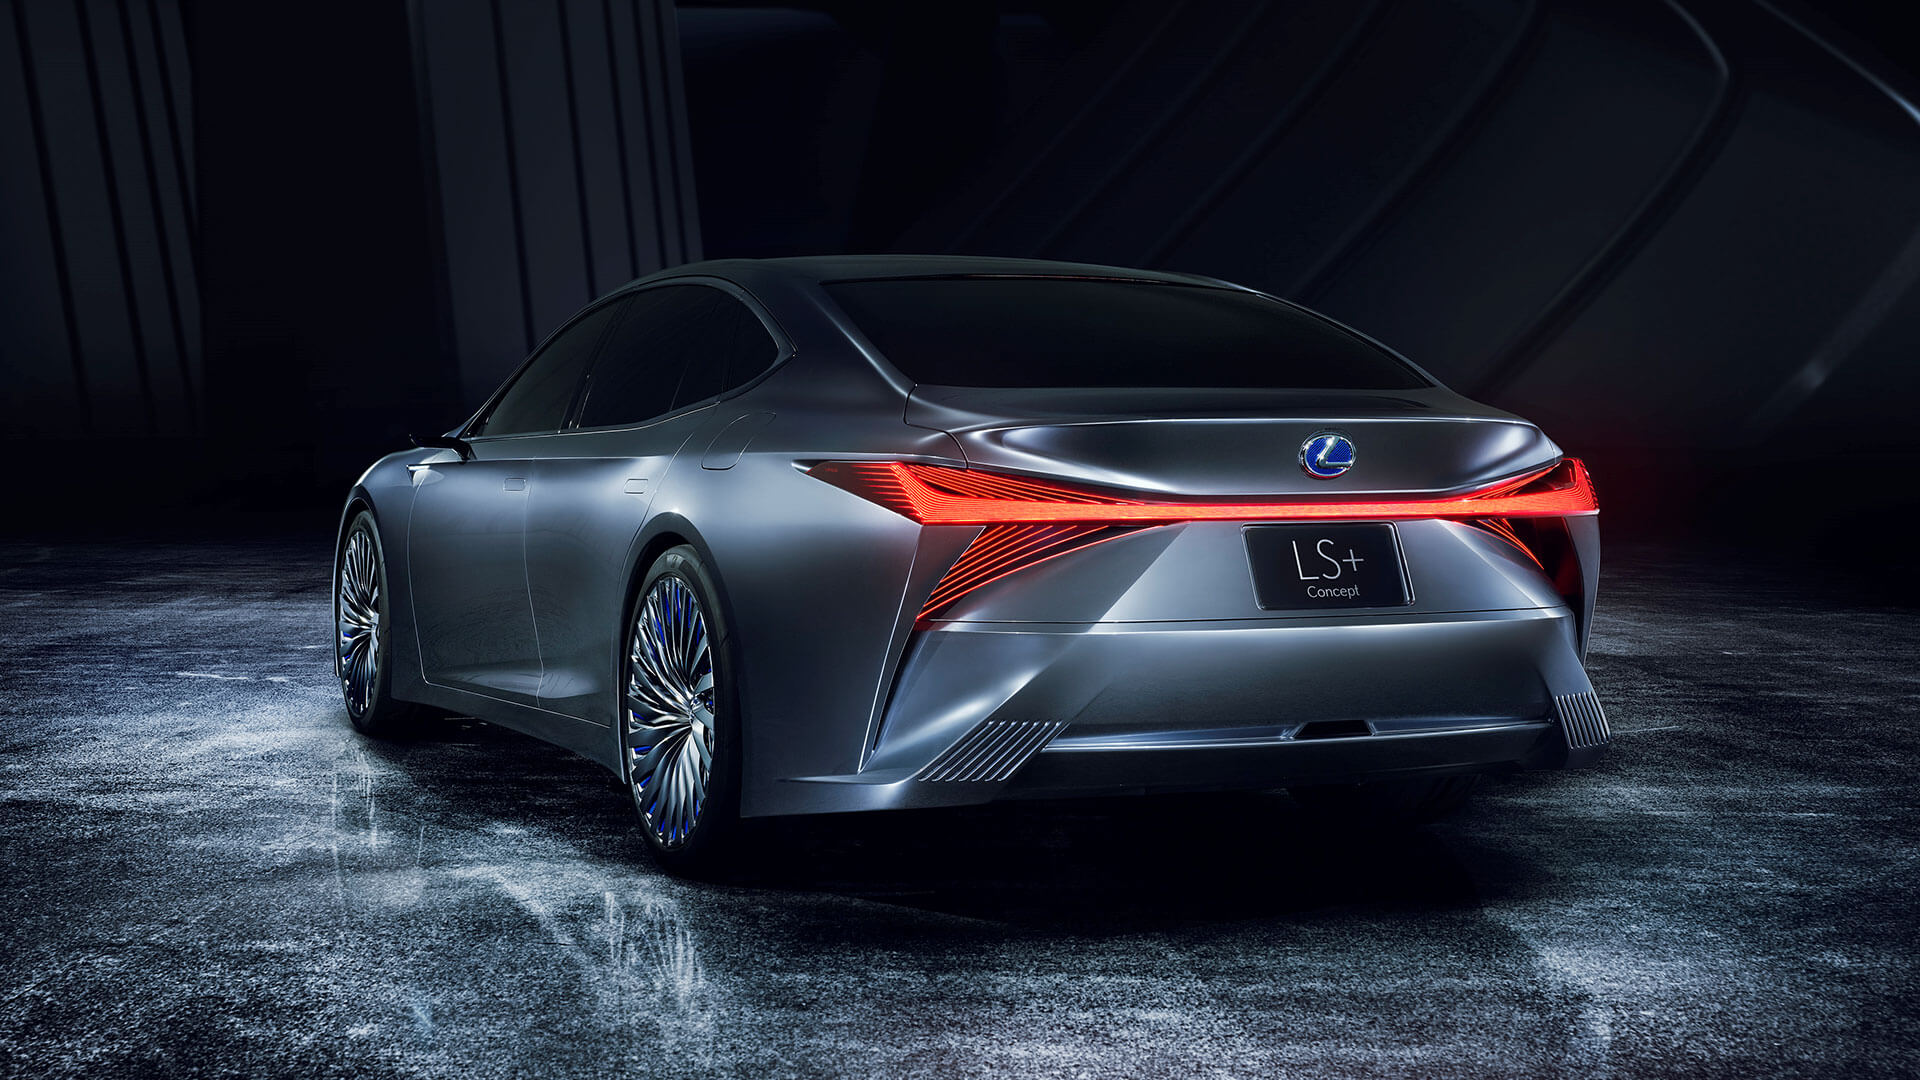 Rear view of the Lexus Premieres LS+ concept car